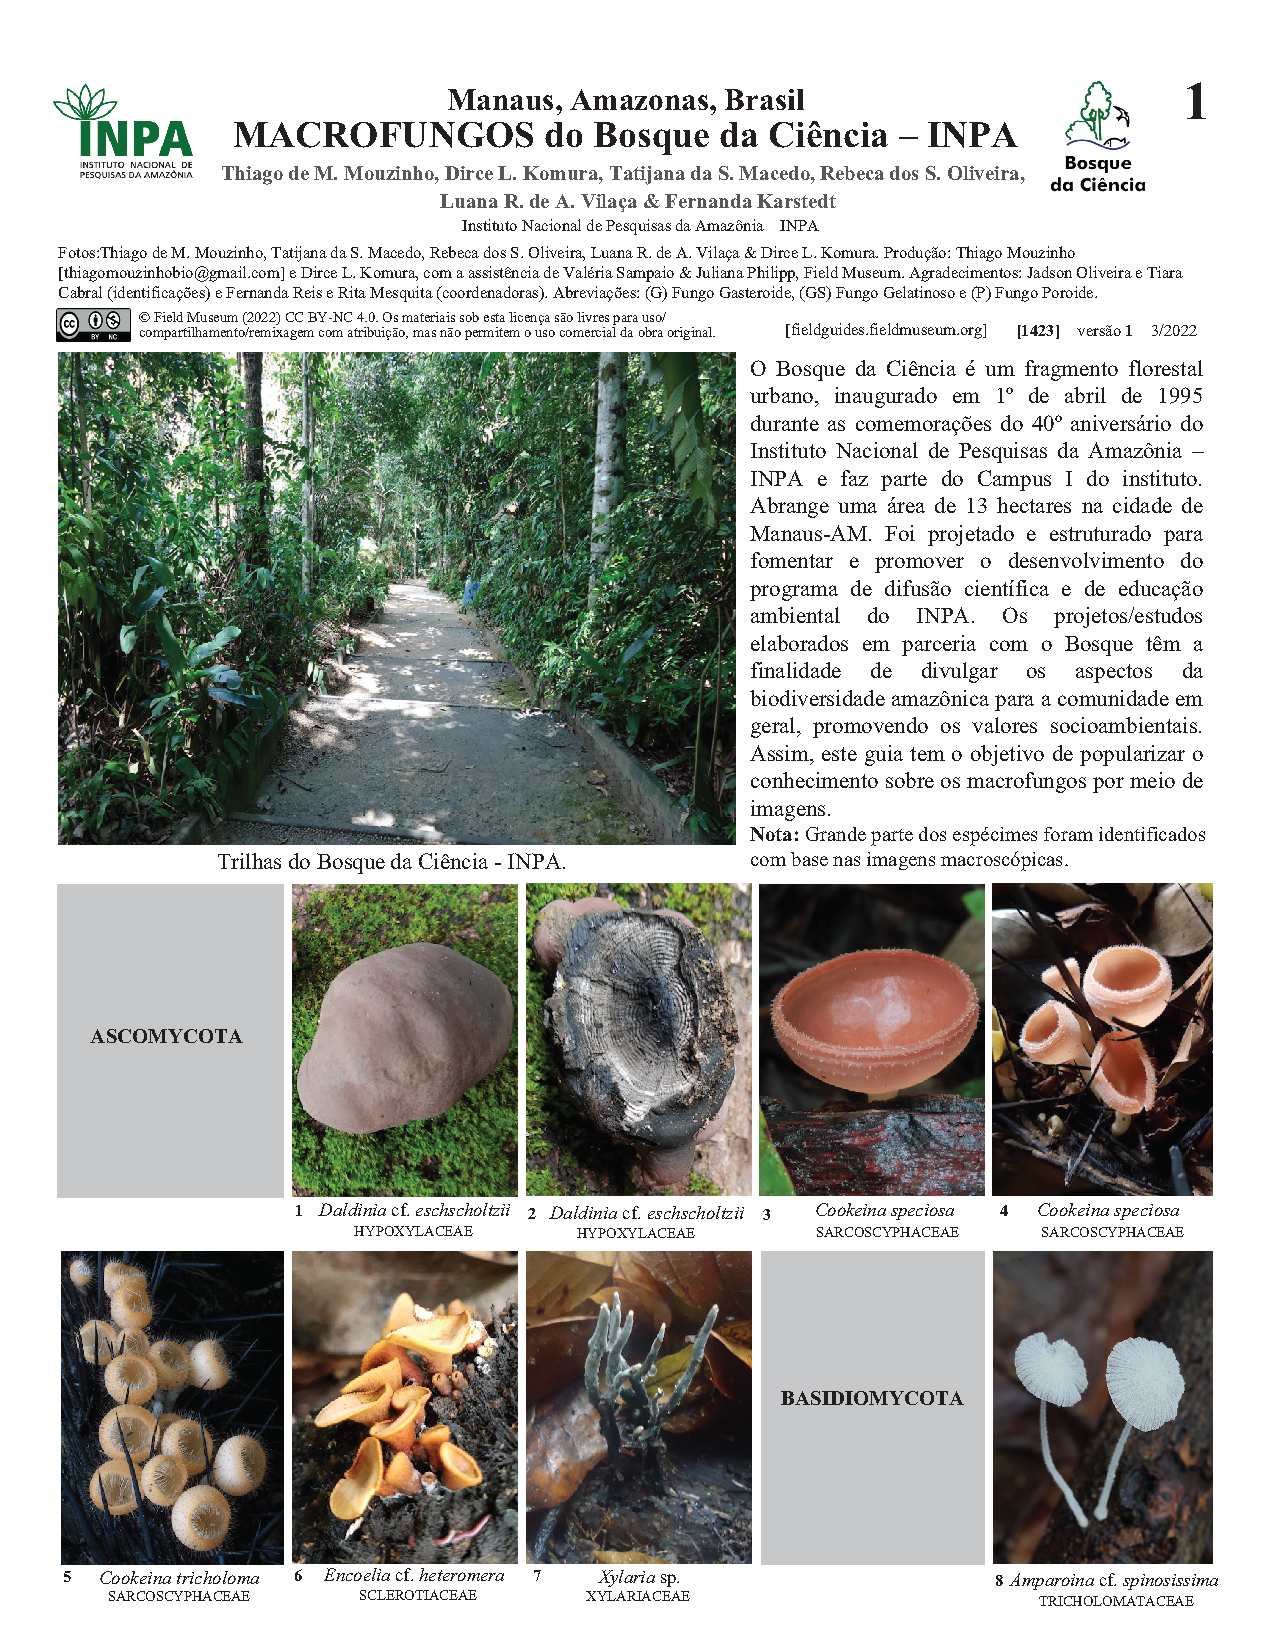 1423_brazil_macrofungi_of_bosque_da_ciencia.pdf 